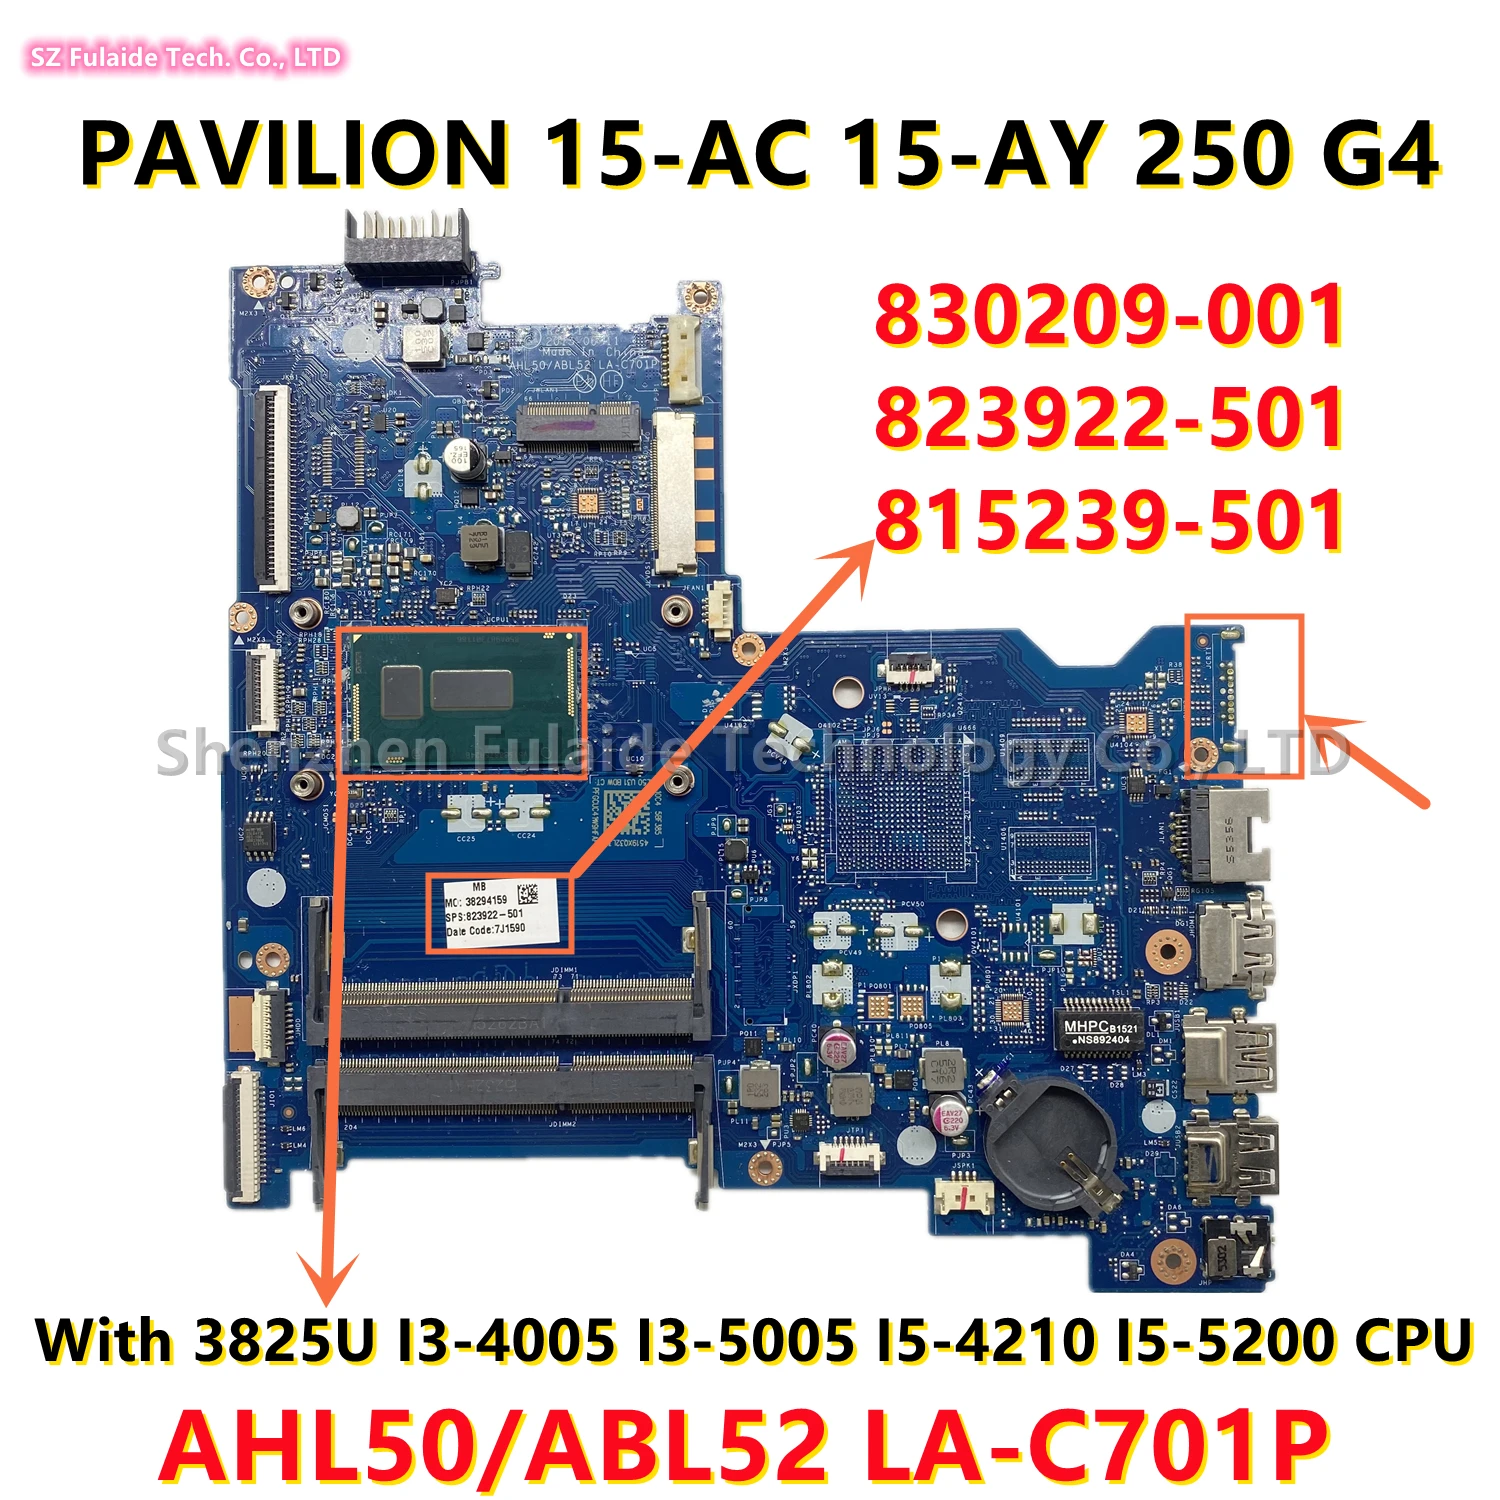 

AHL50/ABL52 LA-C701P For HP 15-AC 15-AY 250 G4 Laptop Motherboard With 3825U I3-4005 I3-5005 I5-4210 I5-5200 CPU 823922-501